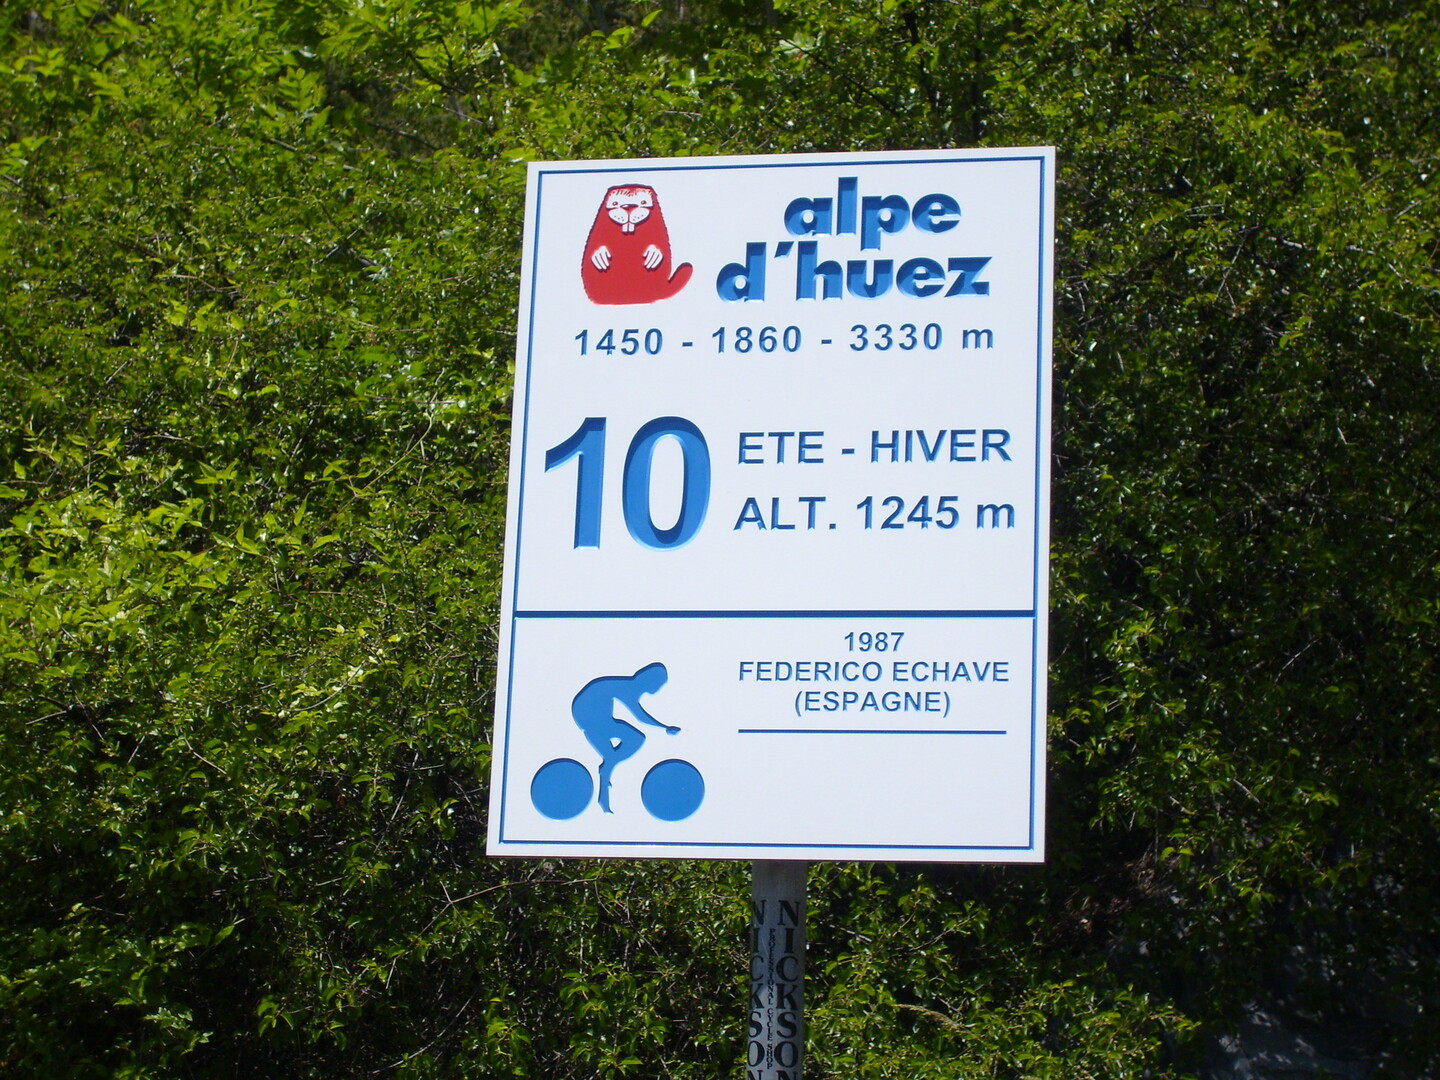 Mythos Alpe d'Huez
"die lebende Legende"